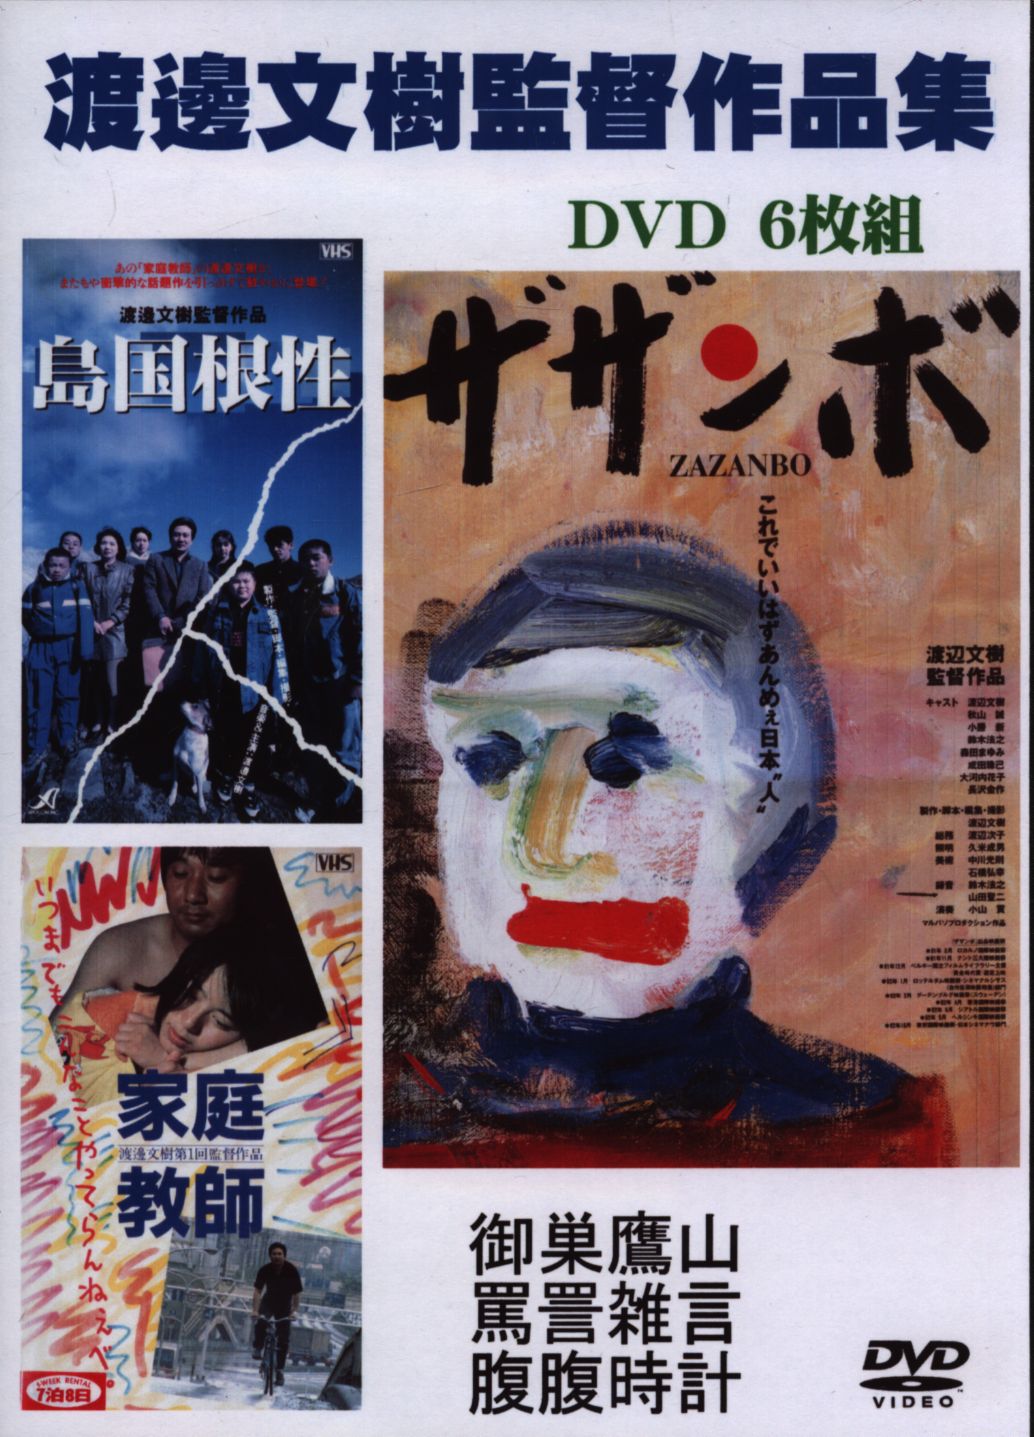 DVD 渡辺文樹「バリゾーゴン」 - DVD